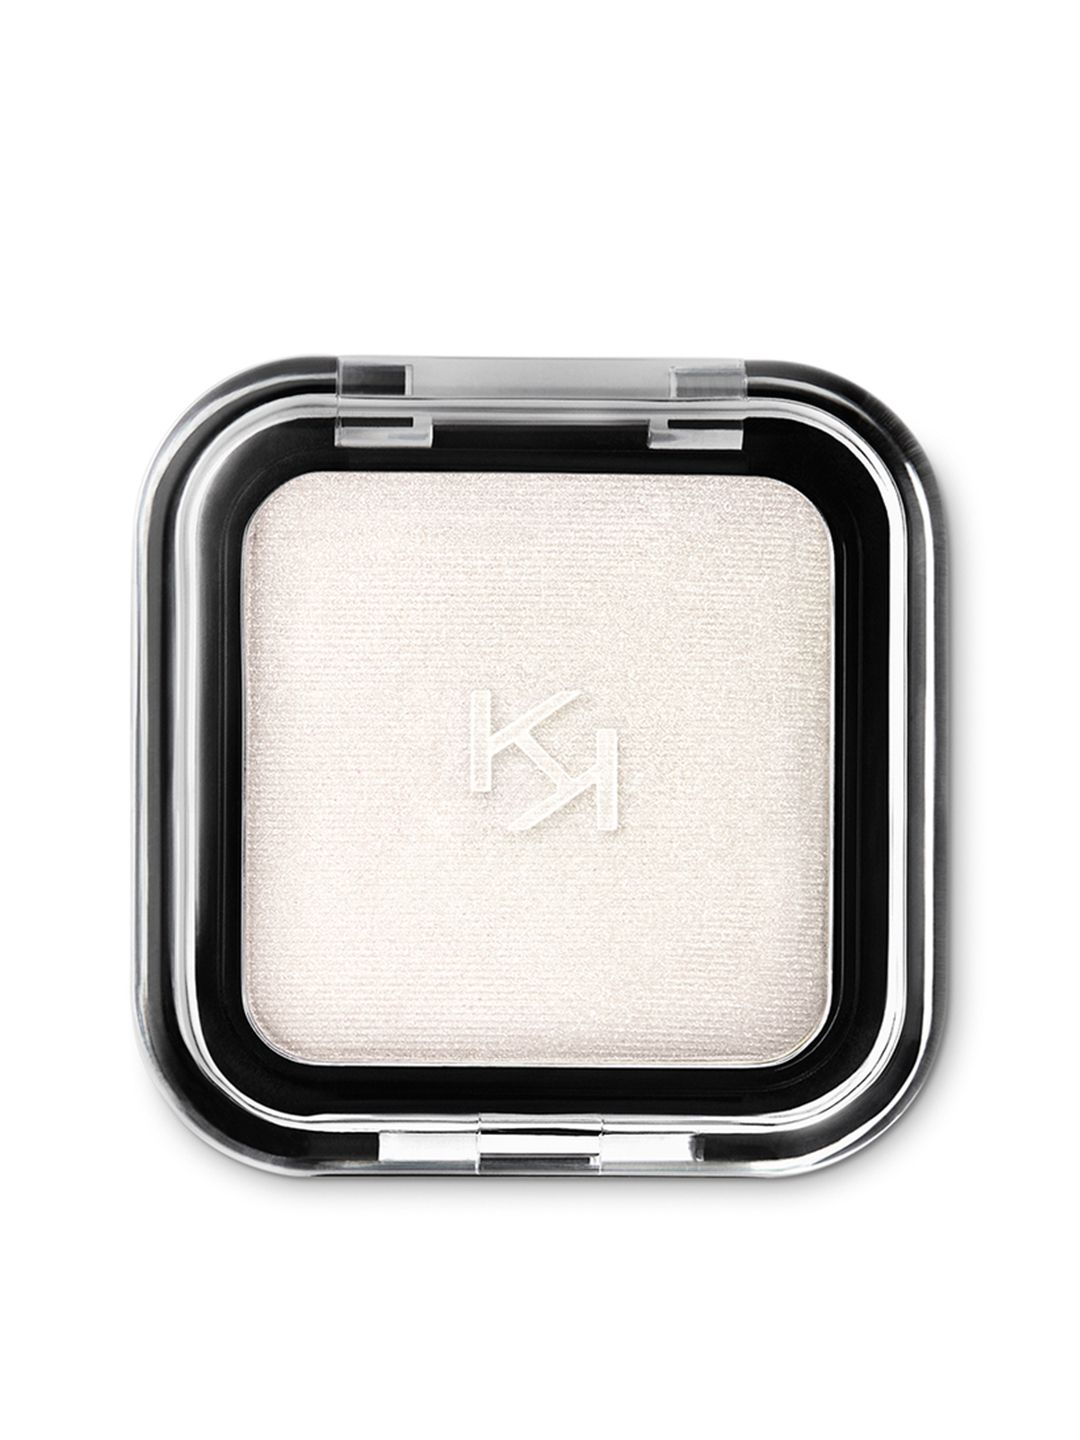 KIKO MILANO Smart Colour Eyeshadow - Metallic Rosy White 01 Price in India